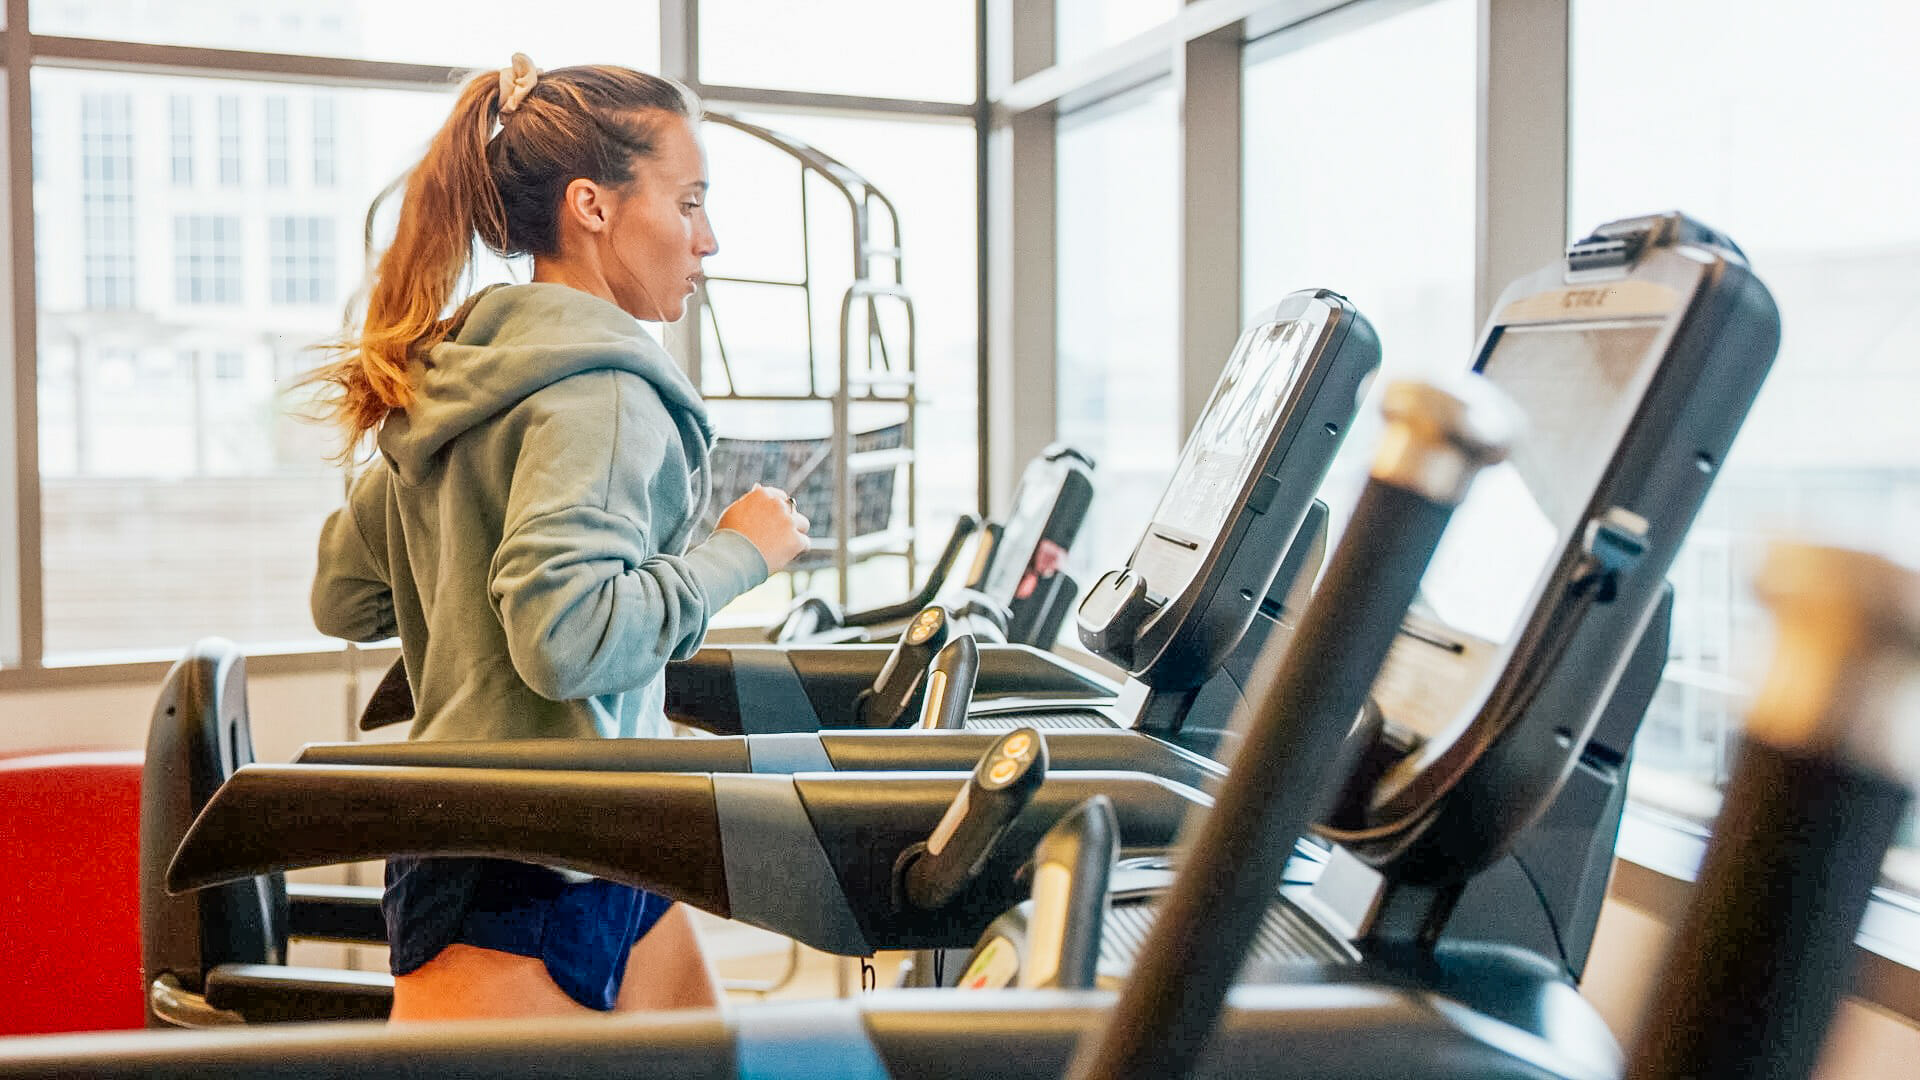 Member Running on Treadmill in Provided Gym